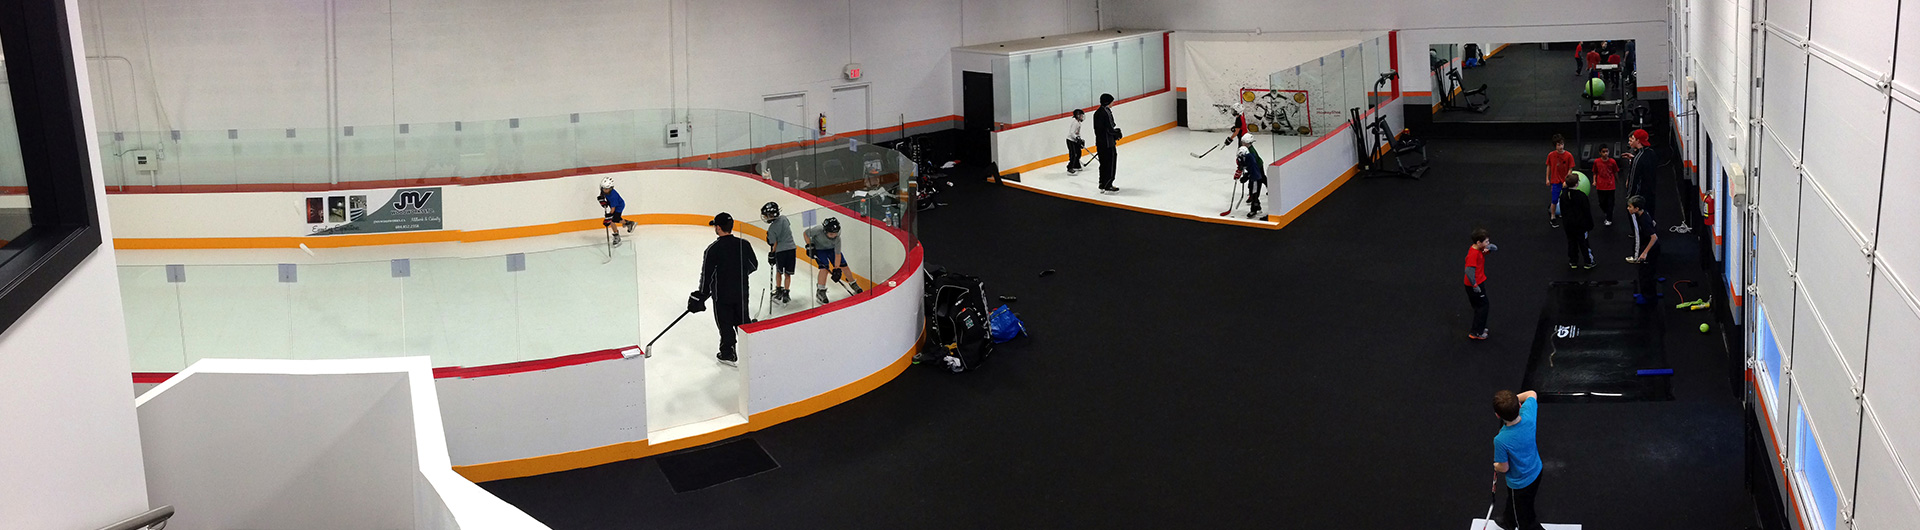 Xtraice Synthetic ice hockey rink